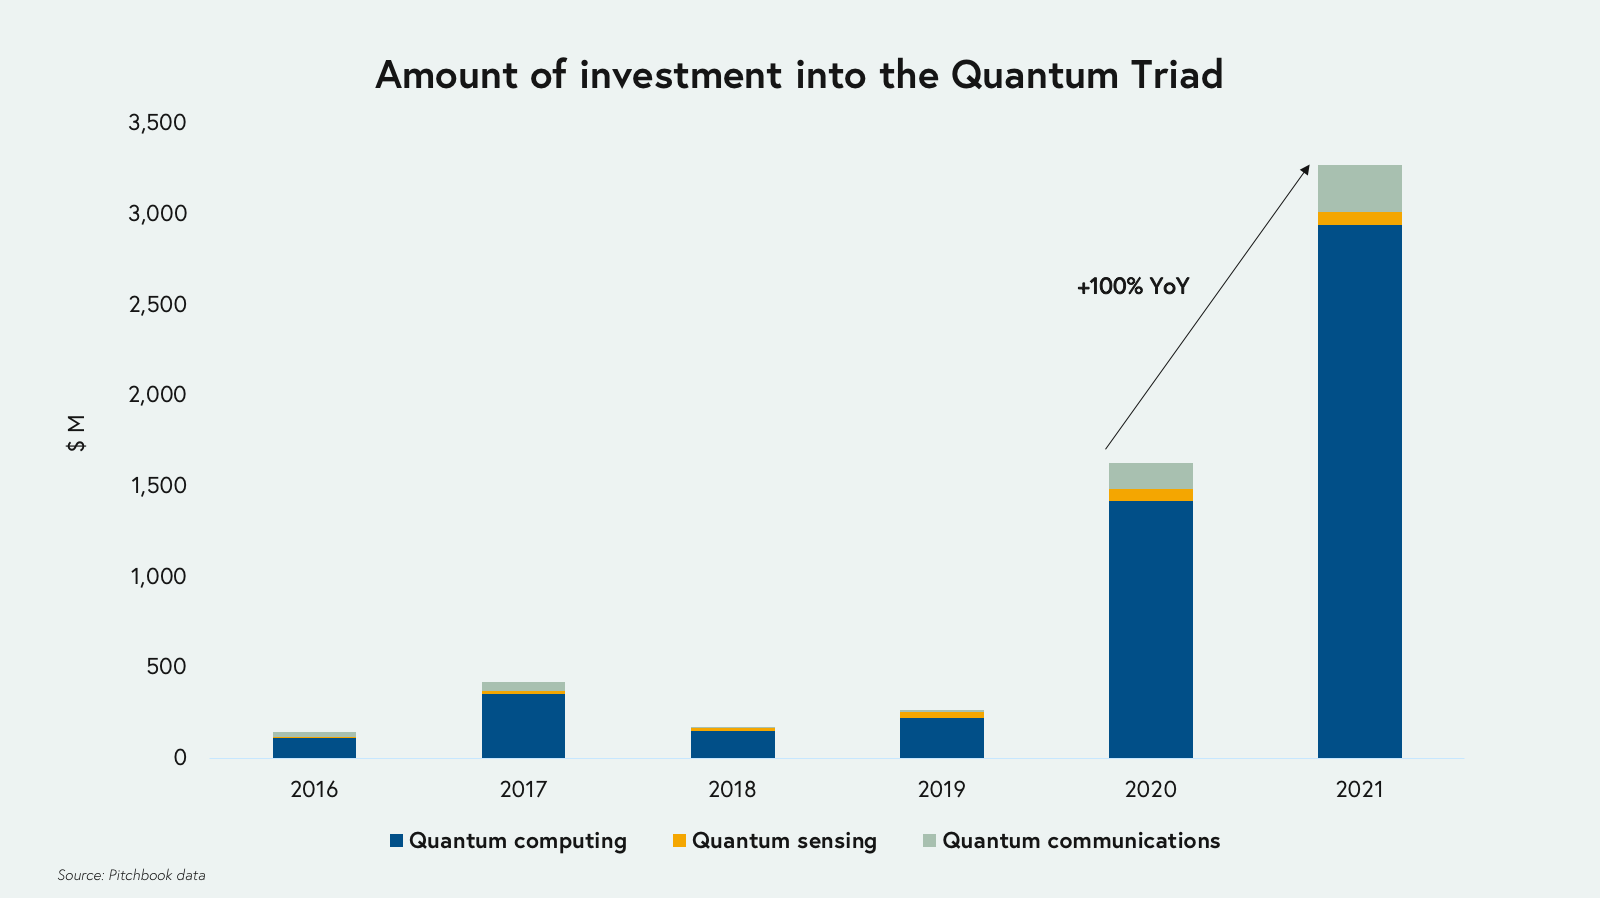 Amount of investment into the Quantum Triad